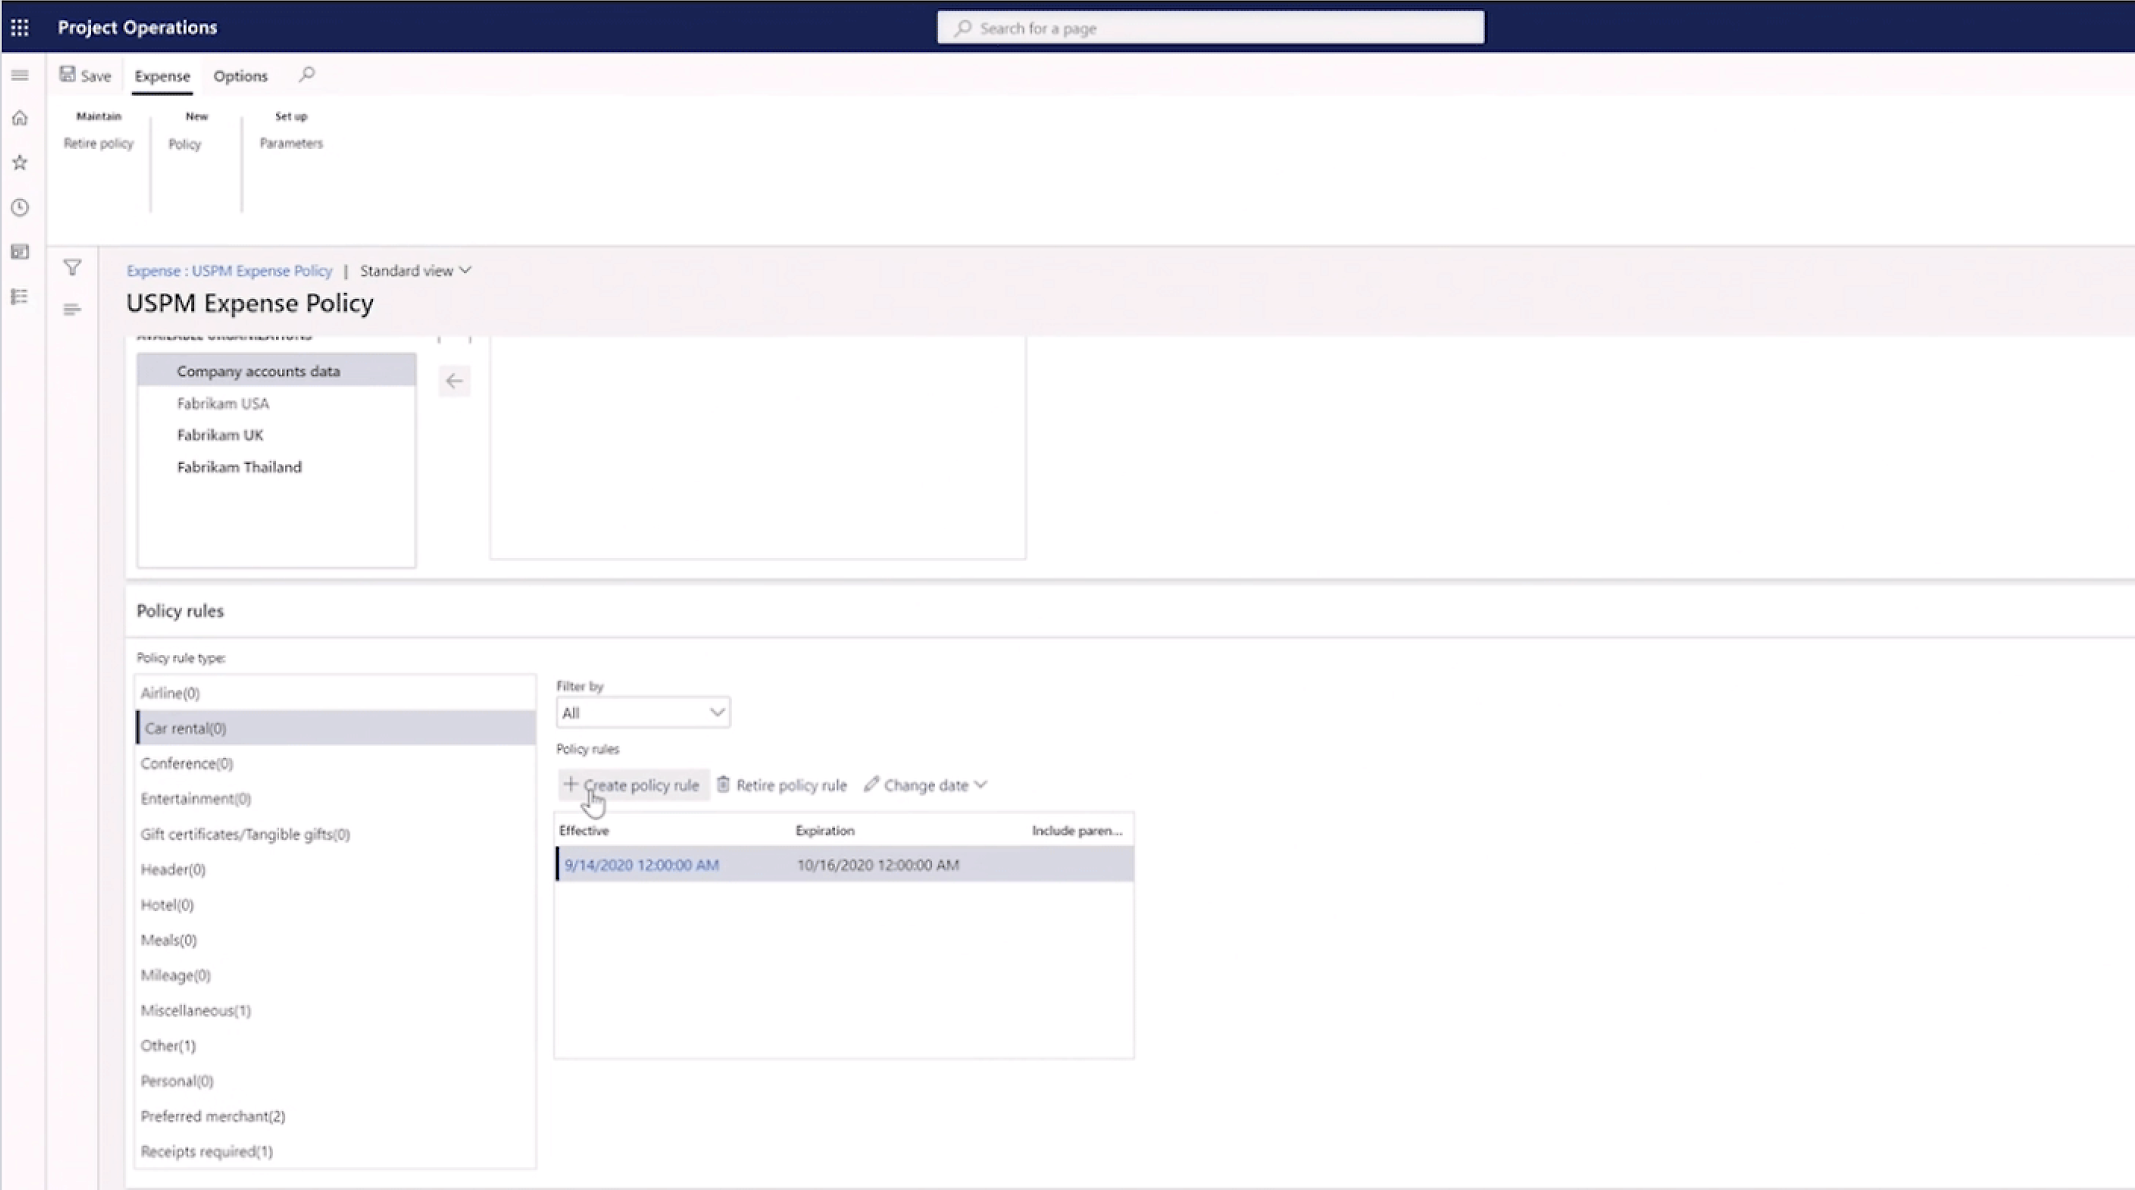 Captura de tela da interface de um computador para um sistema de gerenciamento de política de despesas.